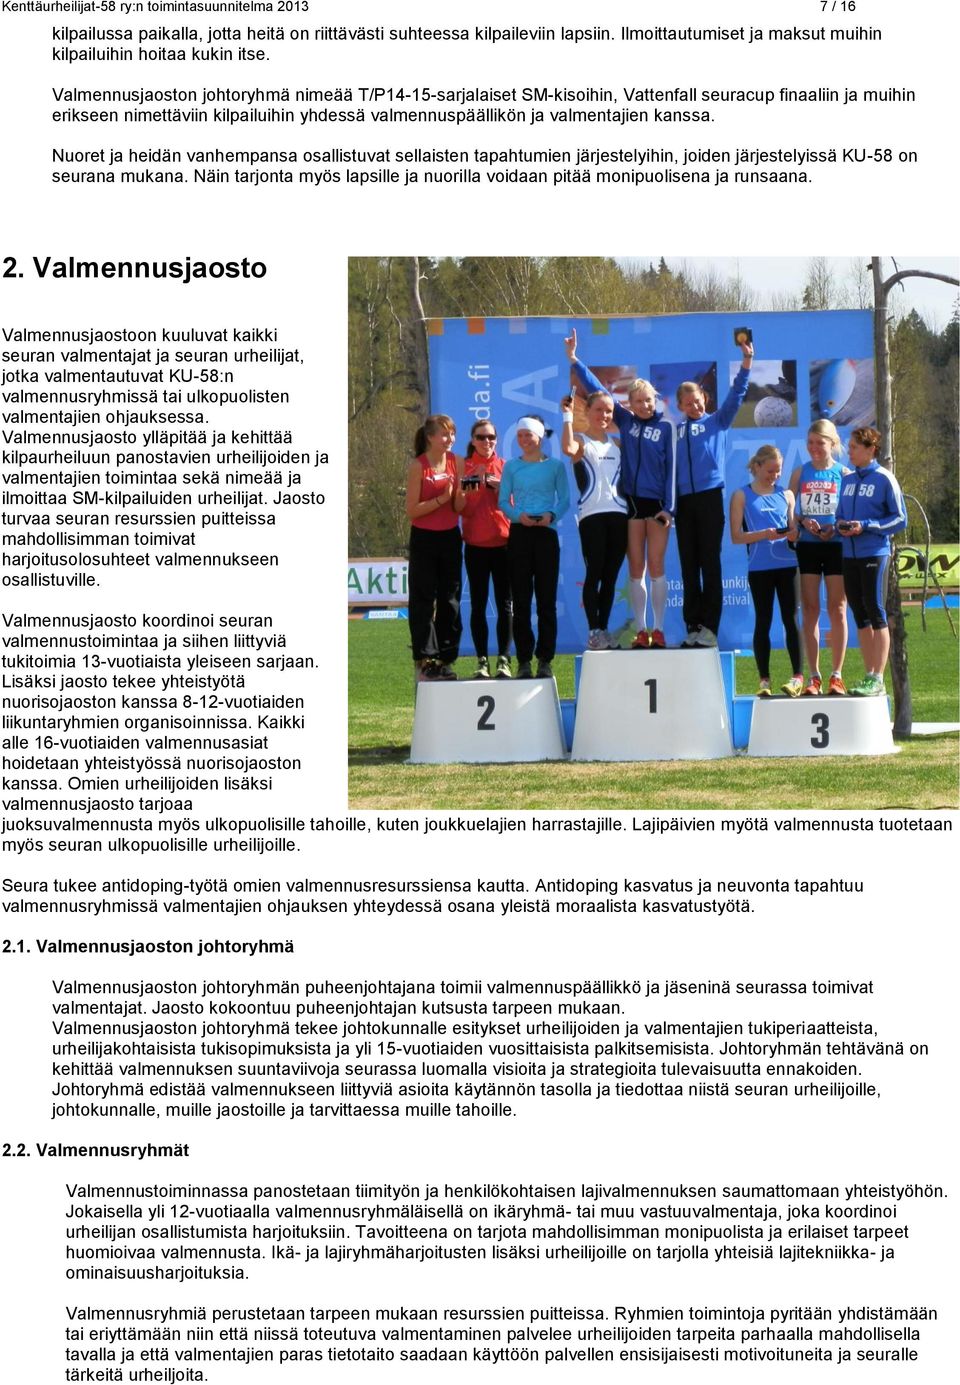 Valmennusjaoston johtoryhmä nimeää T/P14-15-sarjalaiset SM-kisoihin, Vattenfall seuracup finaaliin ja muihin erikseen nimettäviin kilpailuihin yhdessä valmennuspäällikön ja valmentajien kanssa.